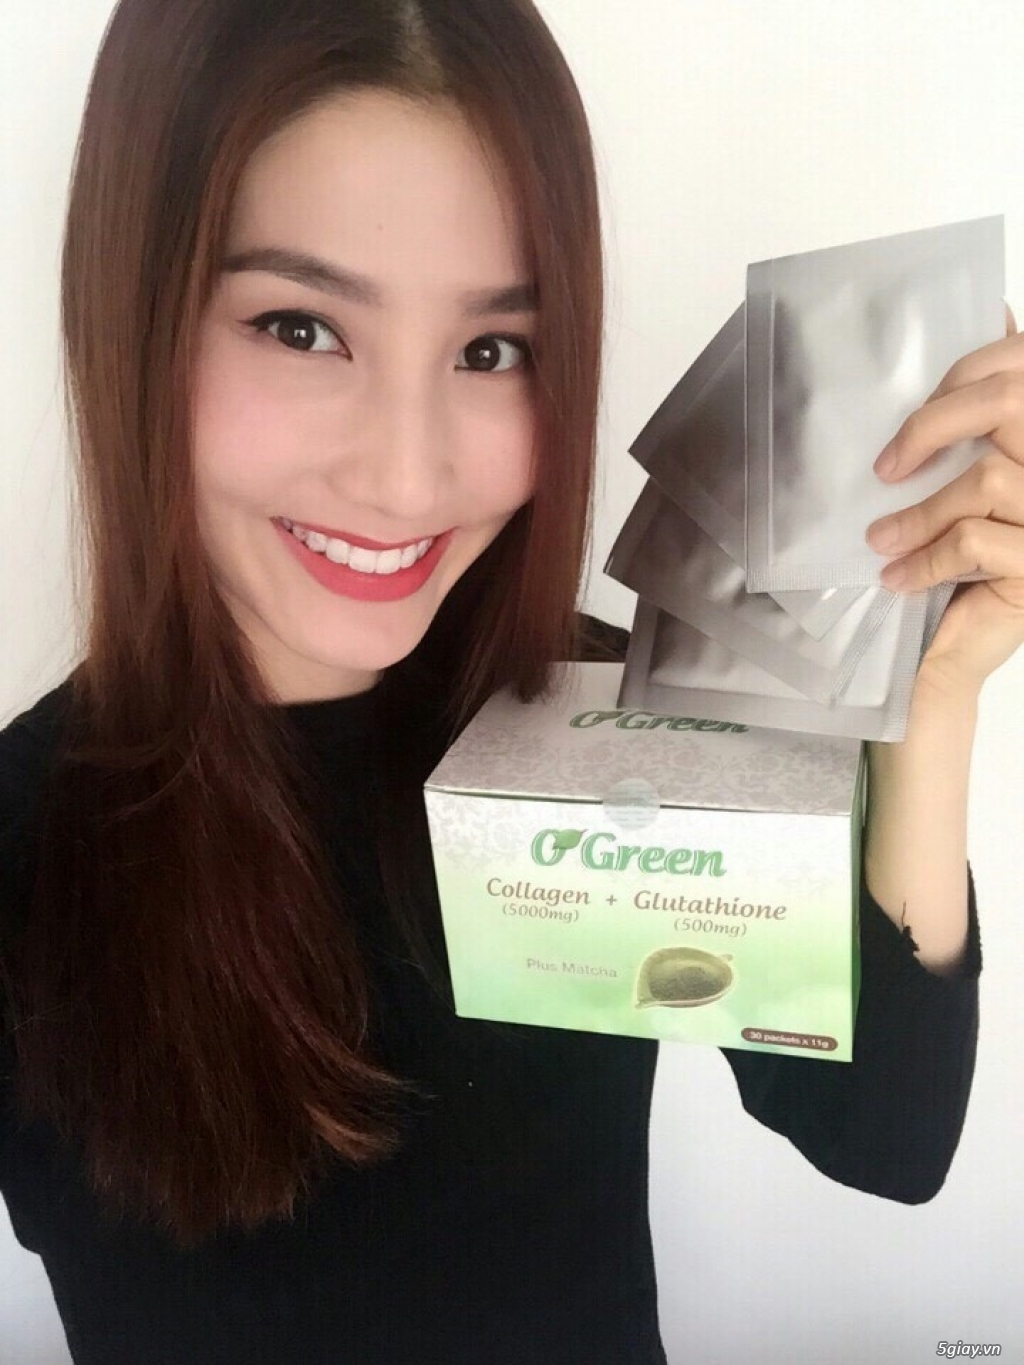 Collagen O'green - 4